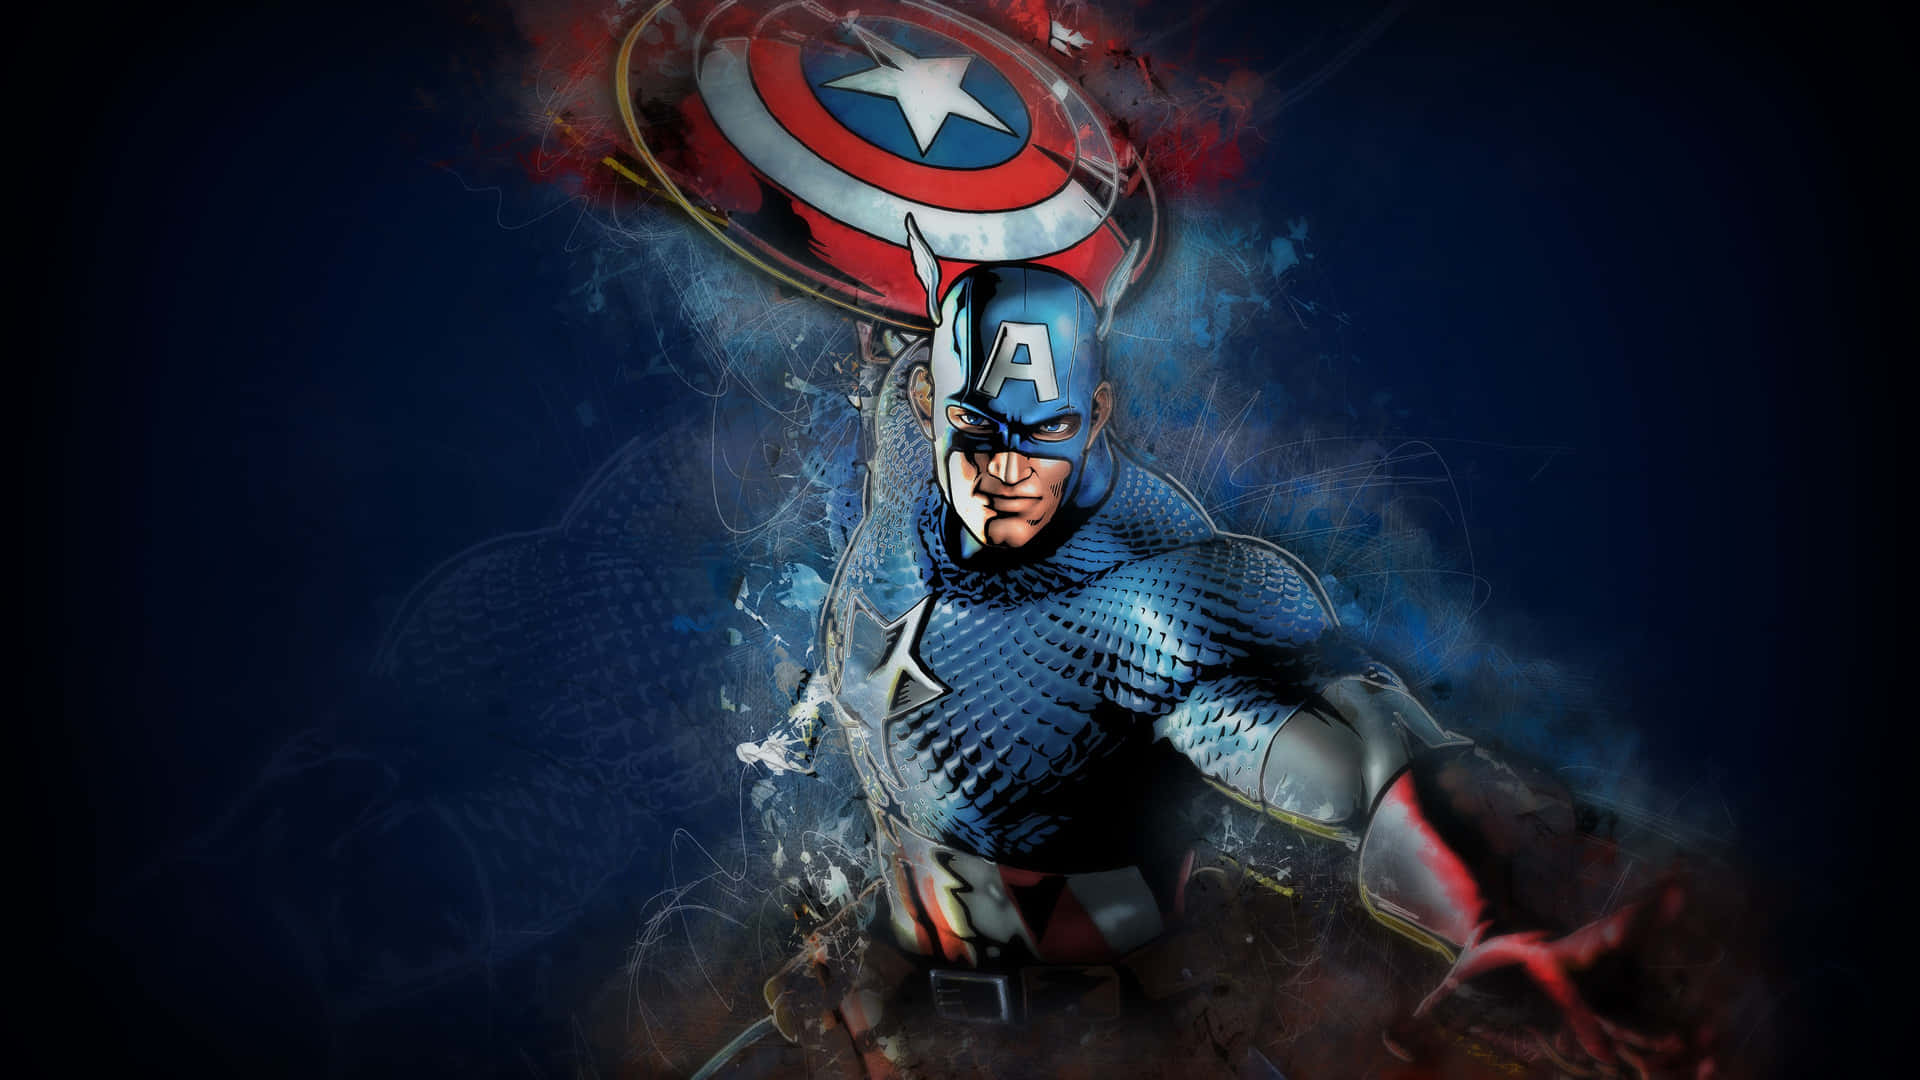 !Vis din patriotisme med denne Captain America Desktop tapet! Wallpaper